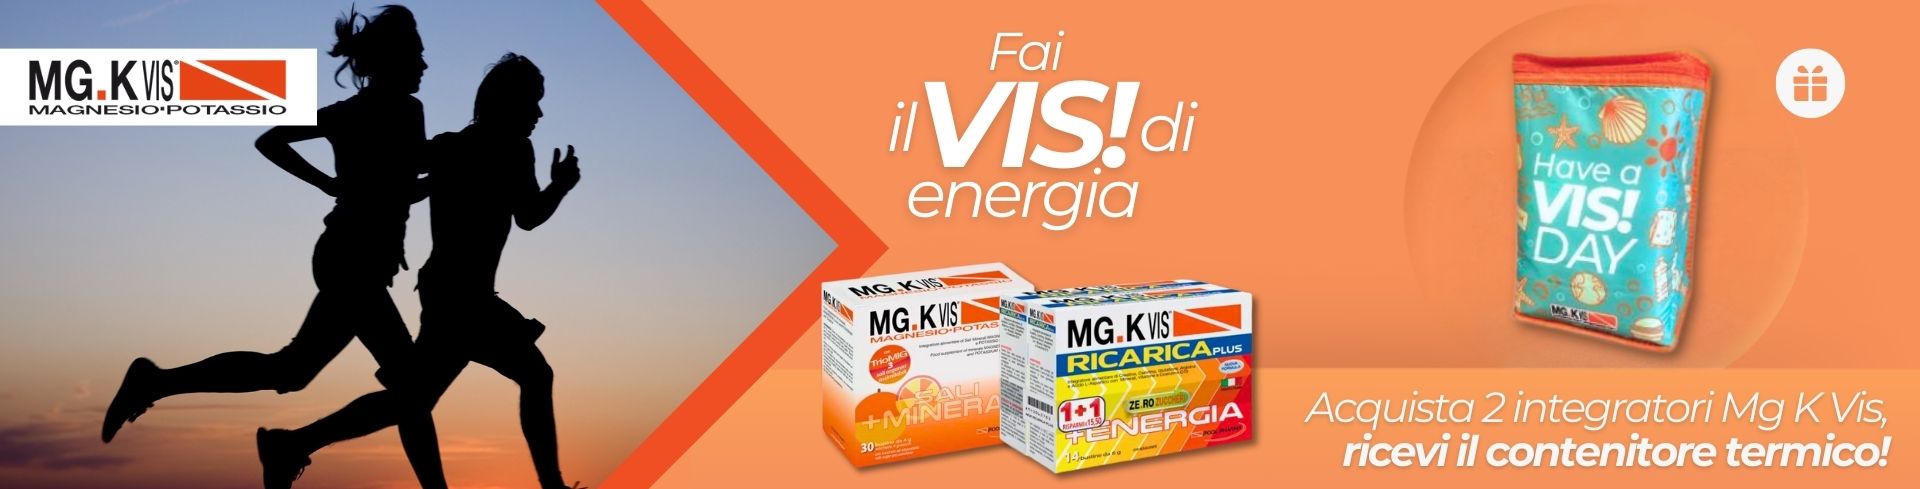 Acquista 2 prodotti MgK Vis, ricevi in regalo il pratico contenitore termico per l'estate!